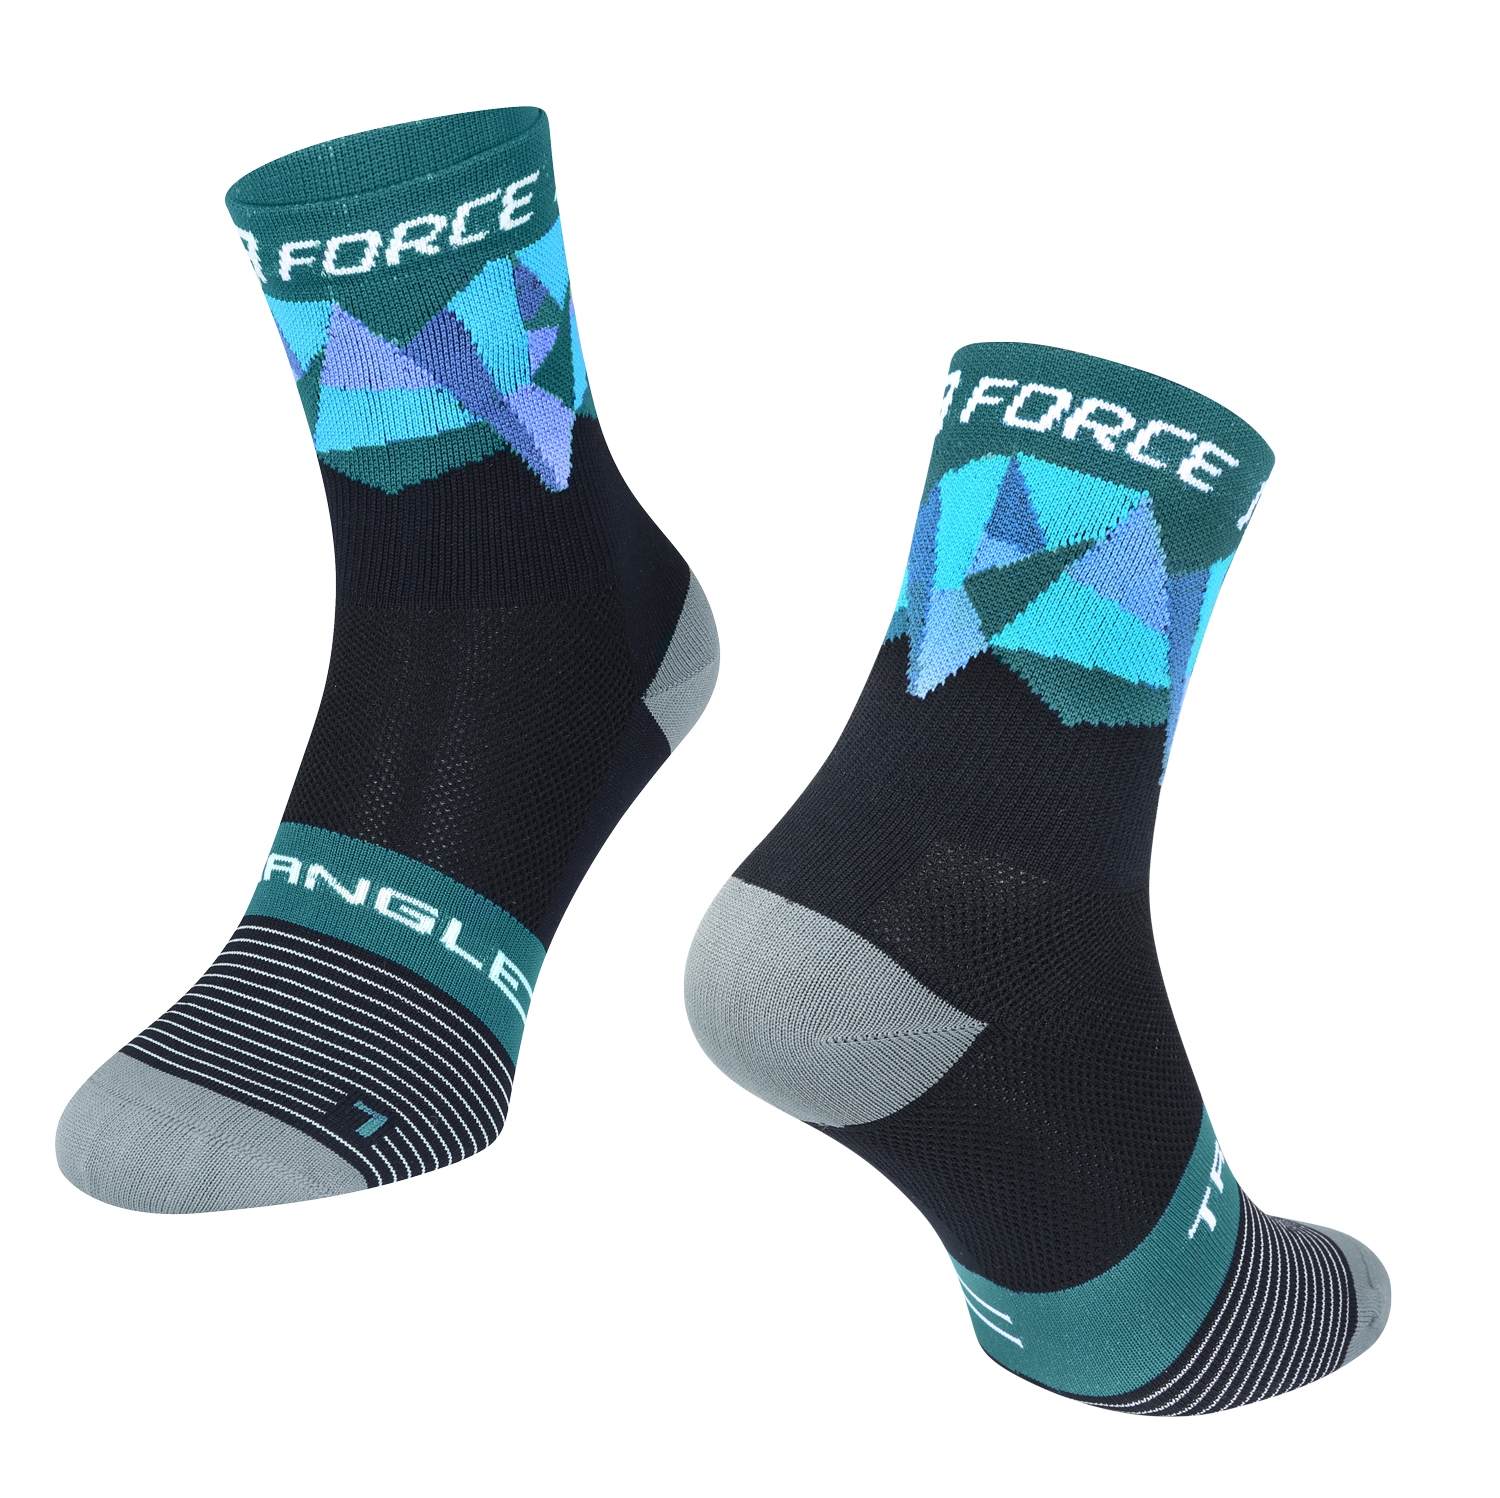 ponožky F TRIANGLE, černo-tyrkysové L-XL/42-47